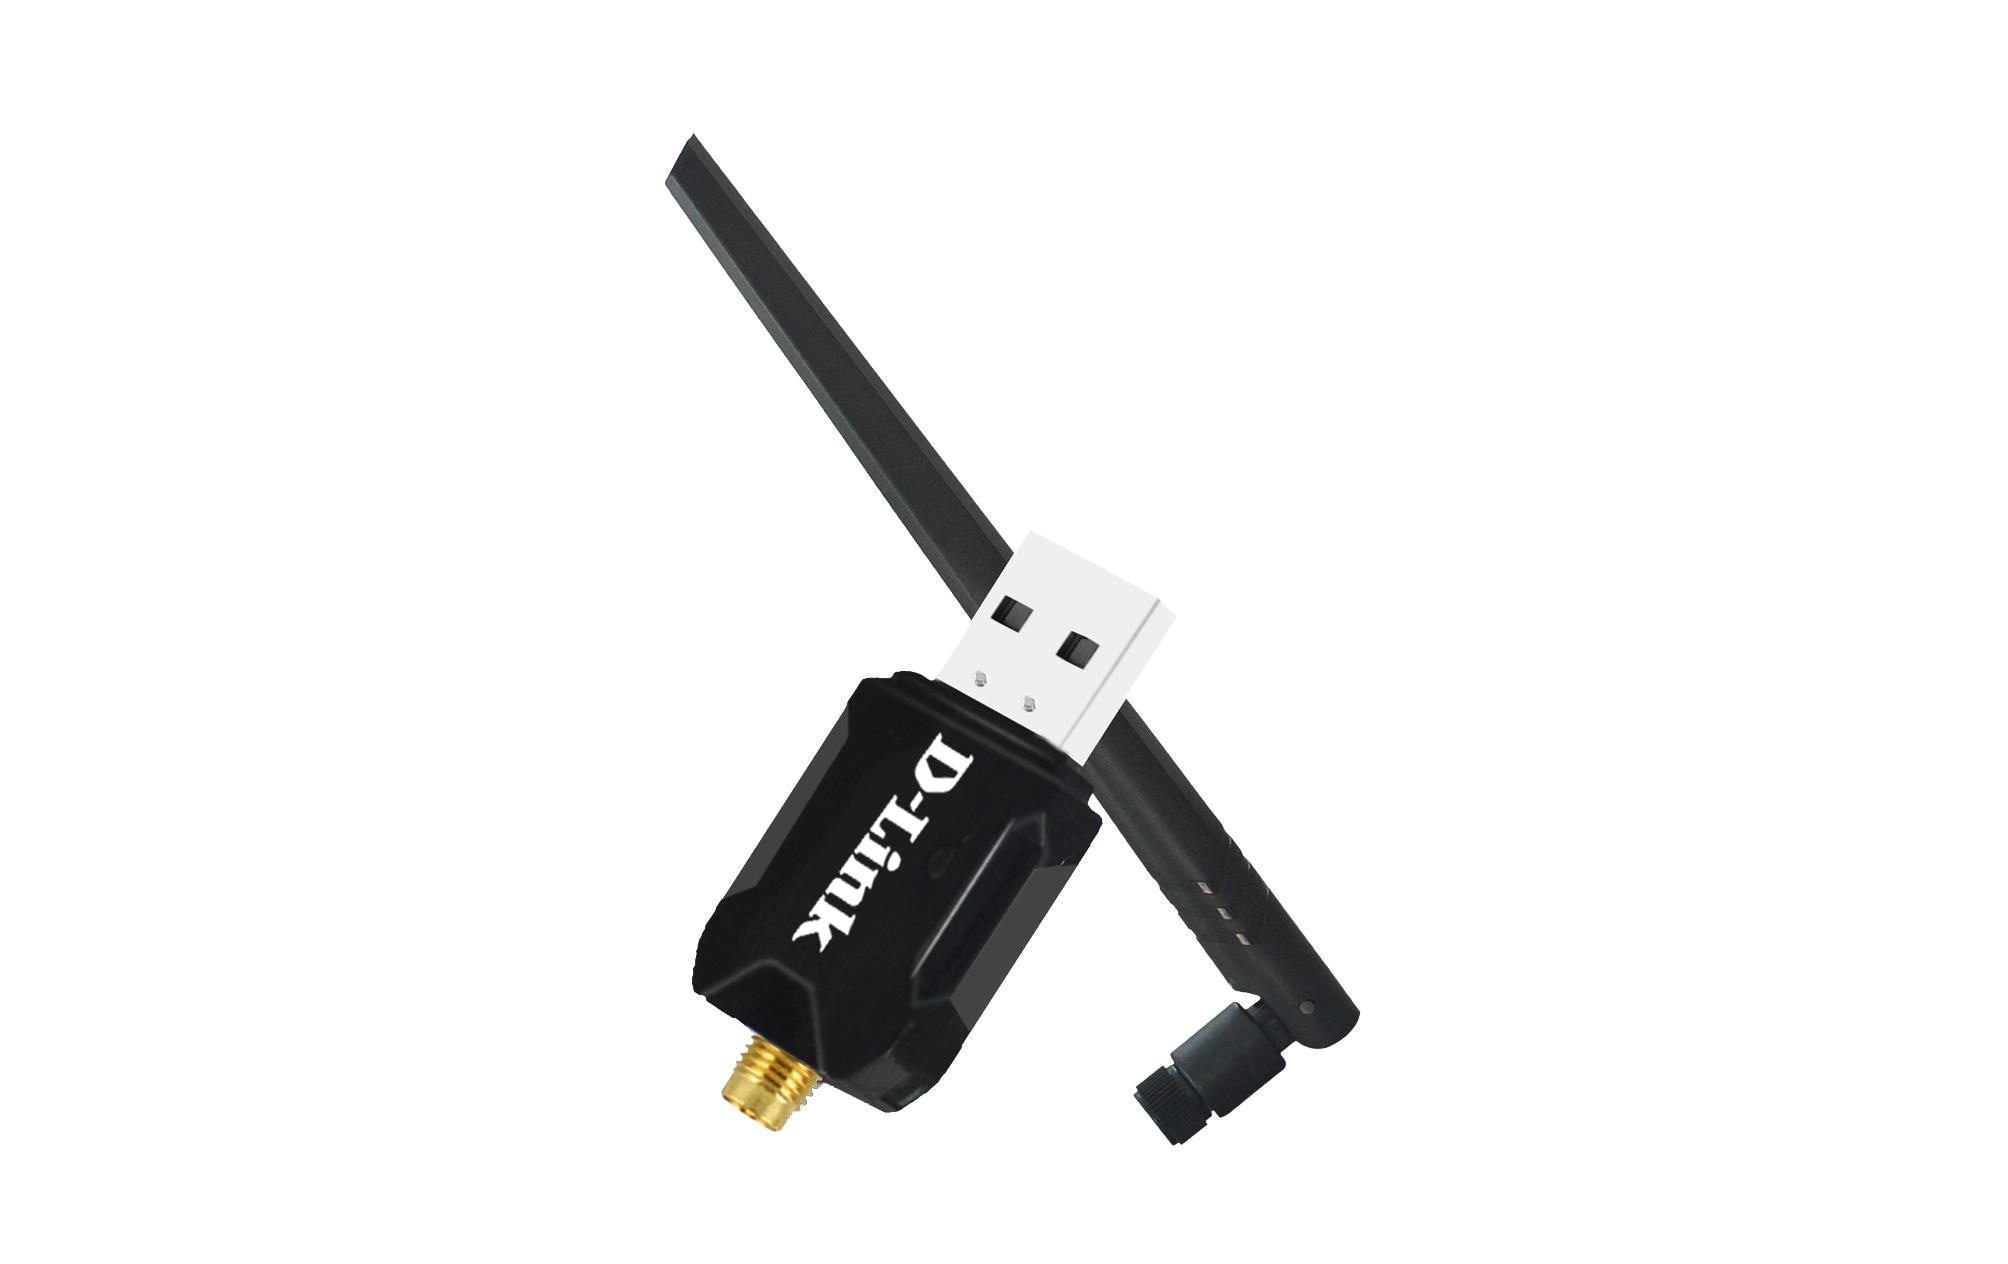 D-Link WLAN-N USB-Stick DWA-137